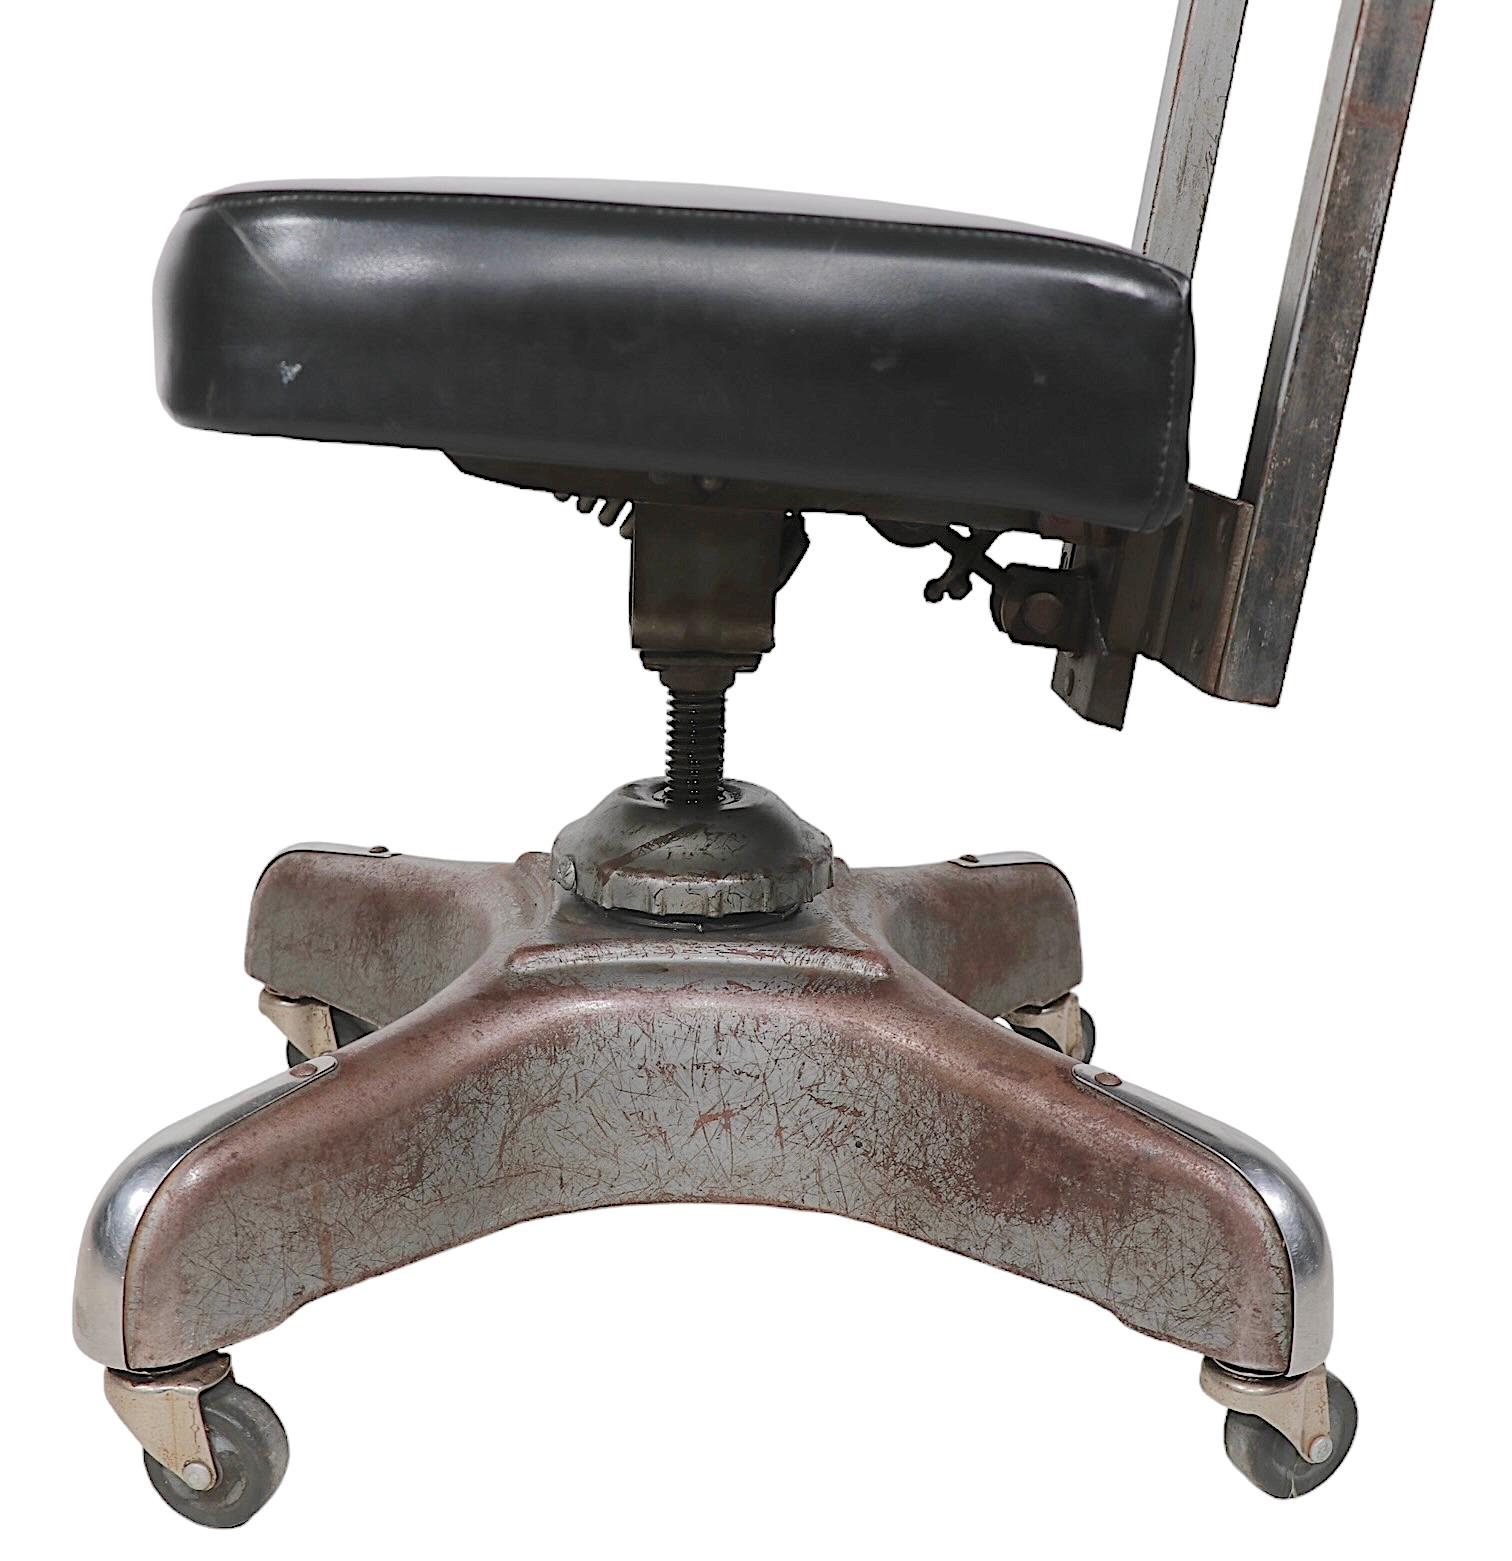 Industriel classique  Chaise de bureau pivotante de style tanker par la Harter Corporation, vers 1930 - 1940. La chaise est dotée d'une base élégante de style hélice avec un chrome Art déco.  détails. Le siège pivote sur 360° et est réglable en